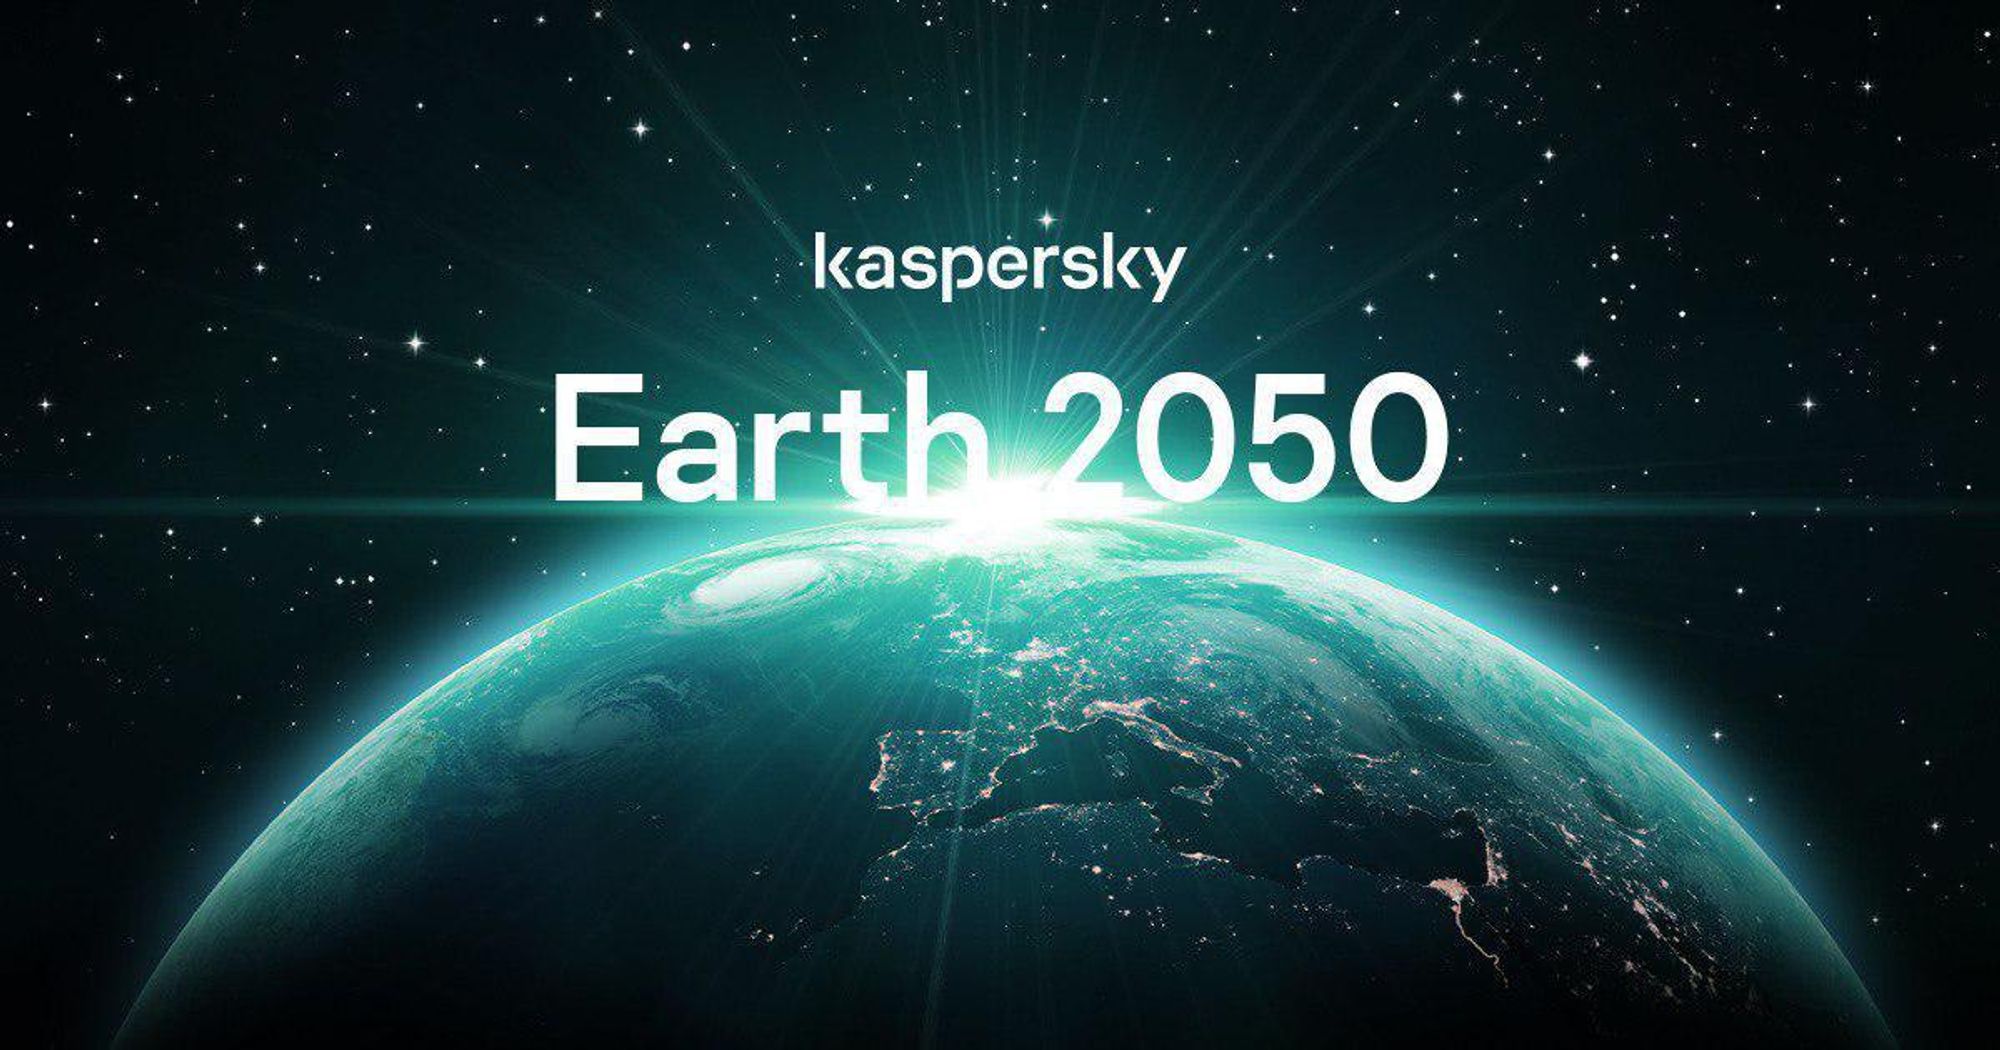 Earth 2050: A glimpse into the future | Kaspersky